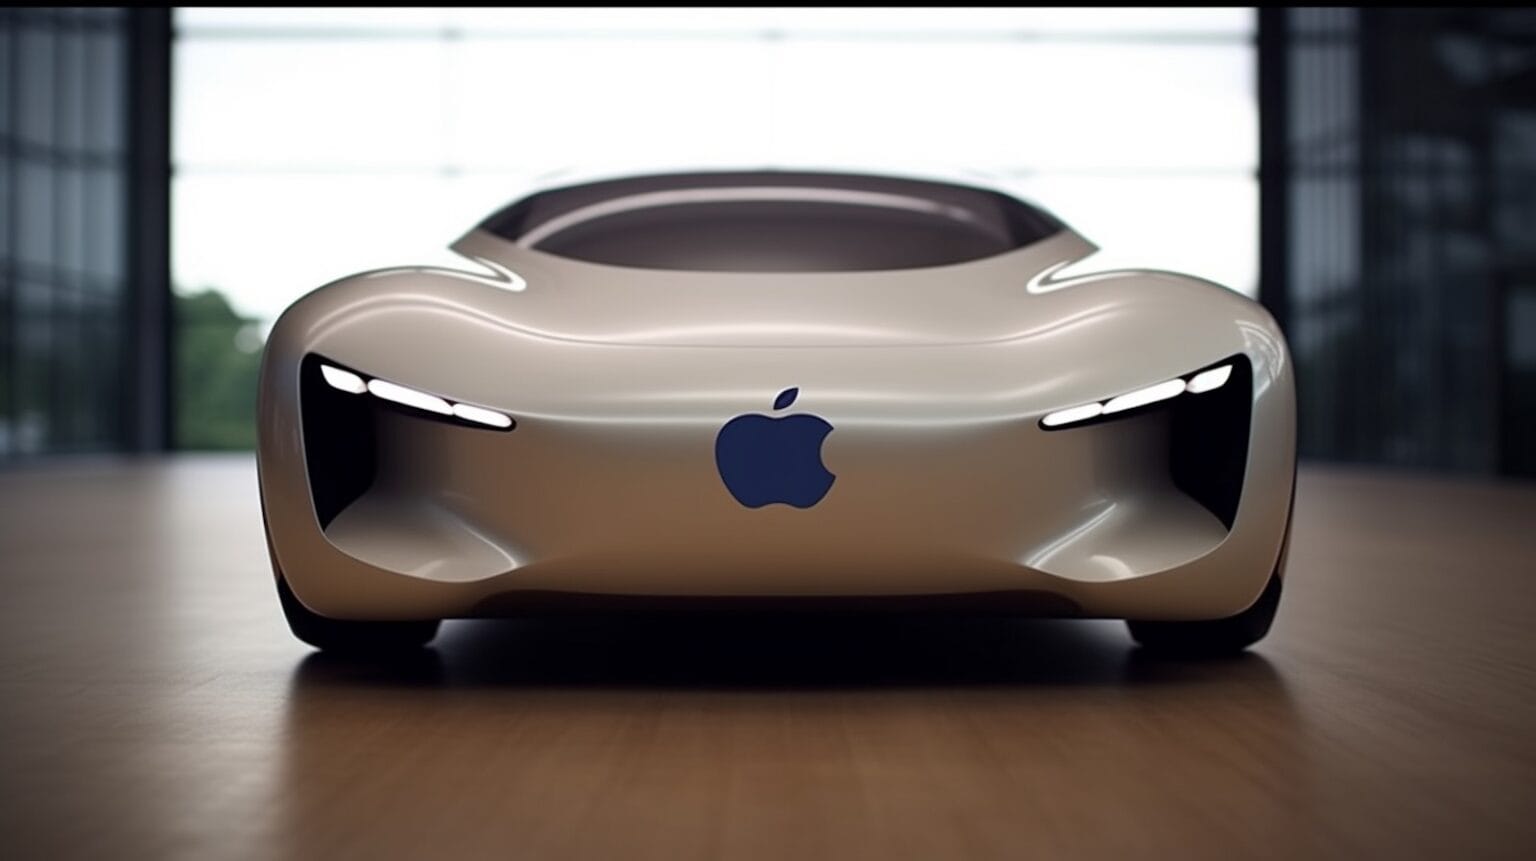 Az Apple autó elbukott, de a projekt nem volt eredménytelen - 2. rész